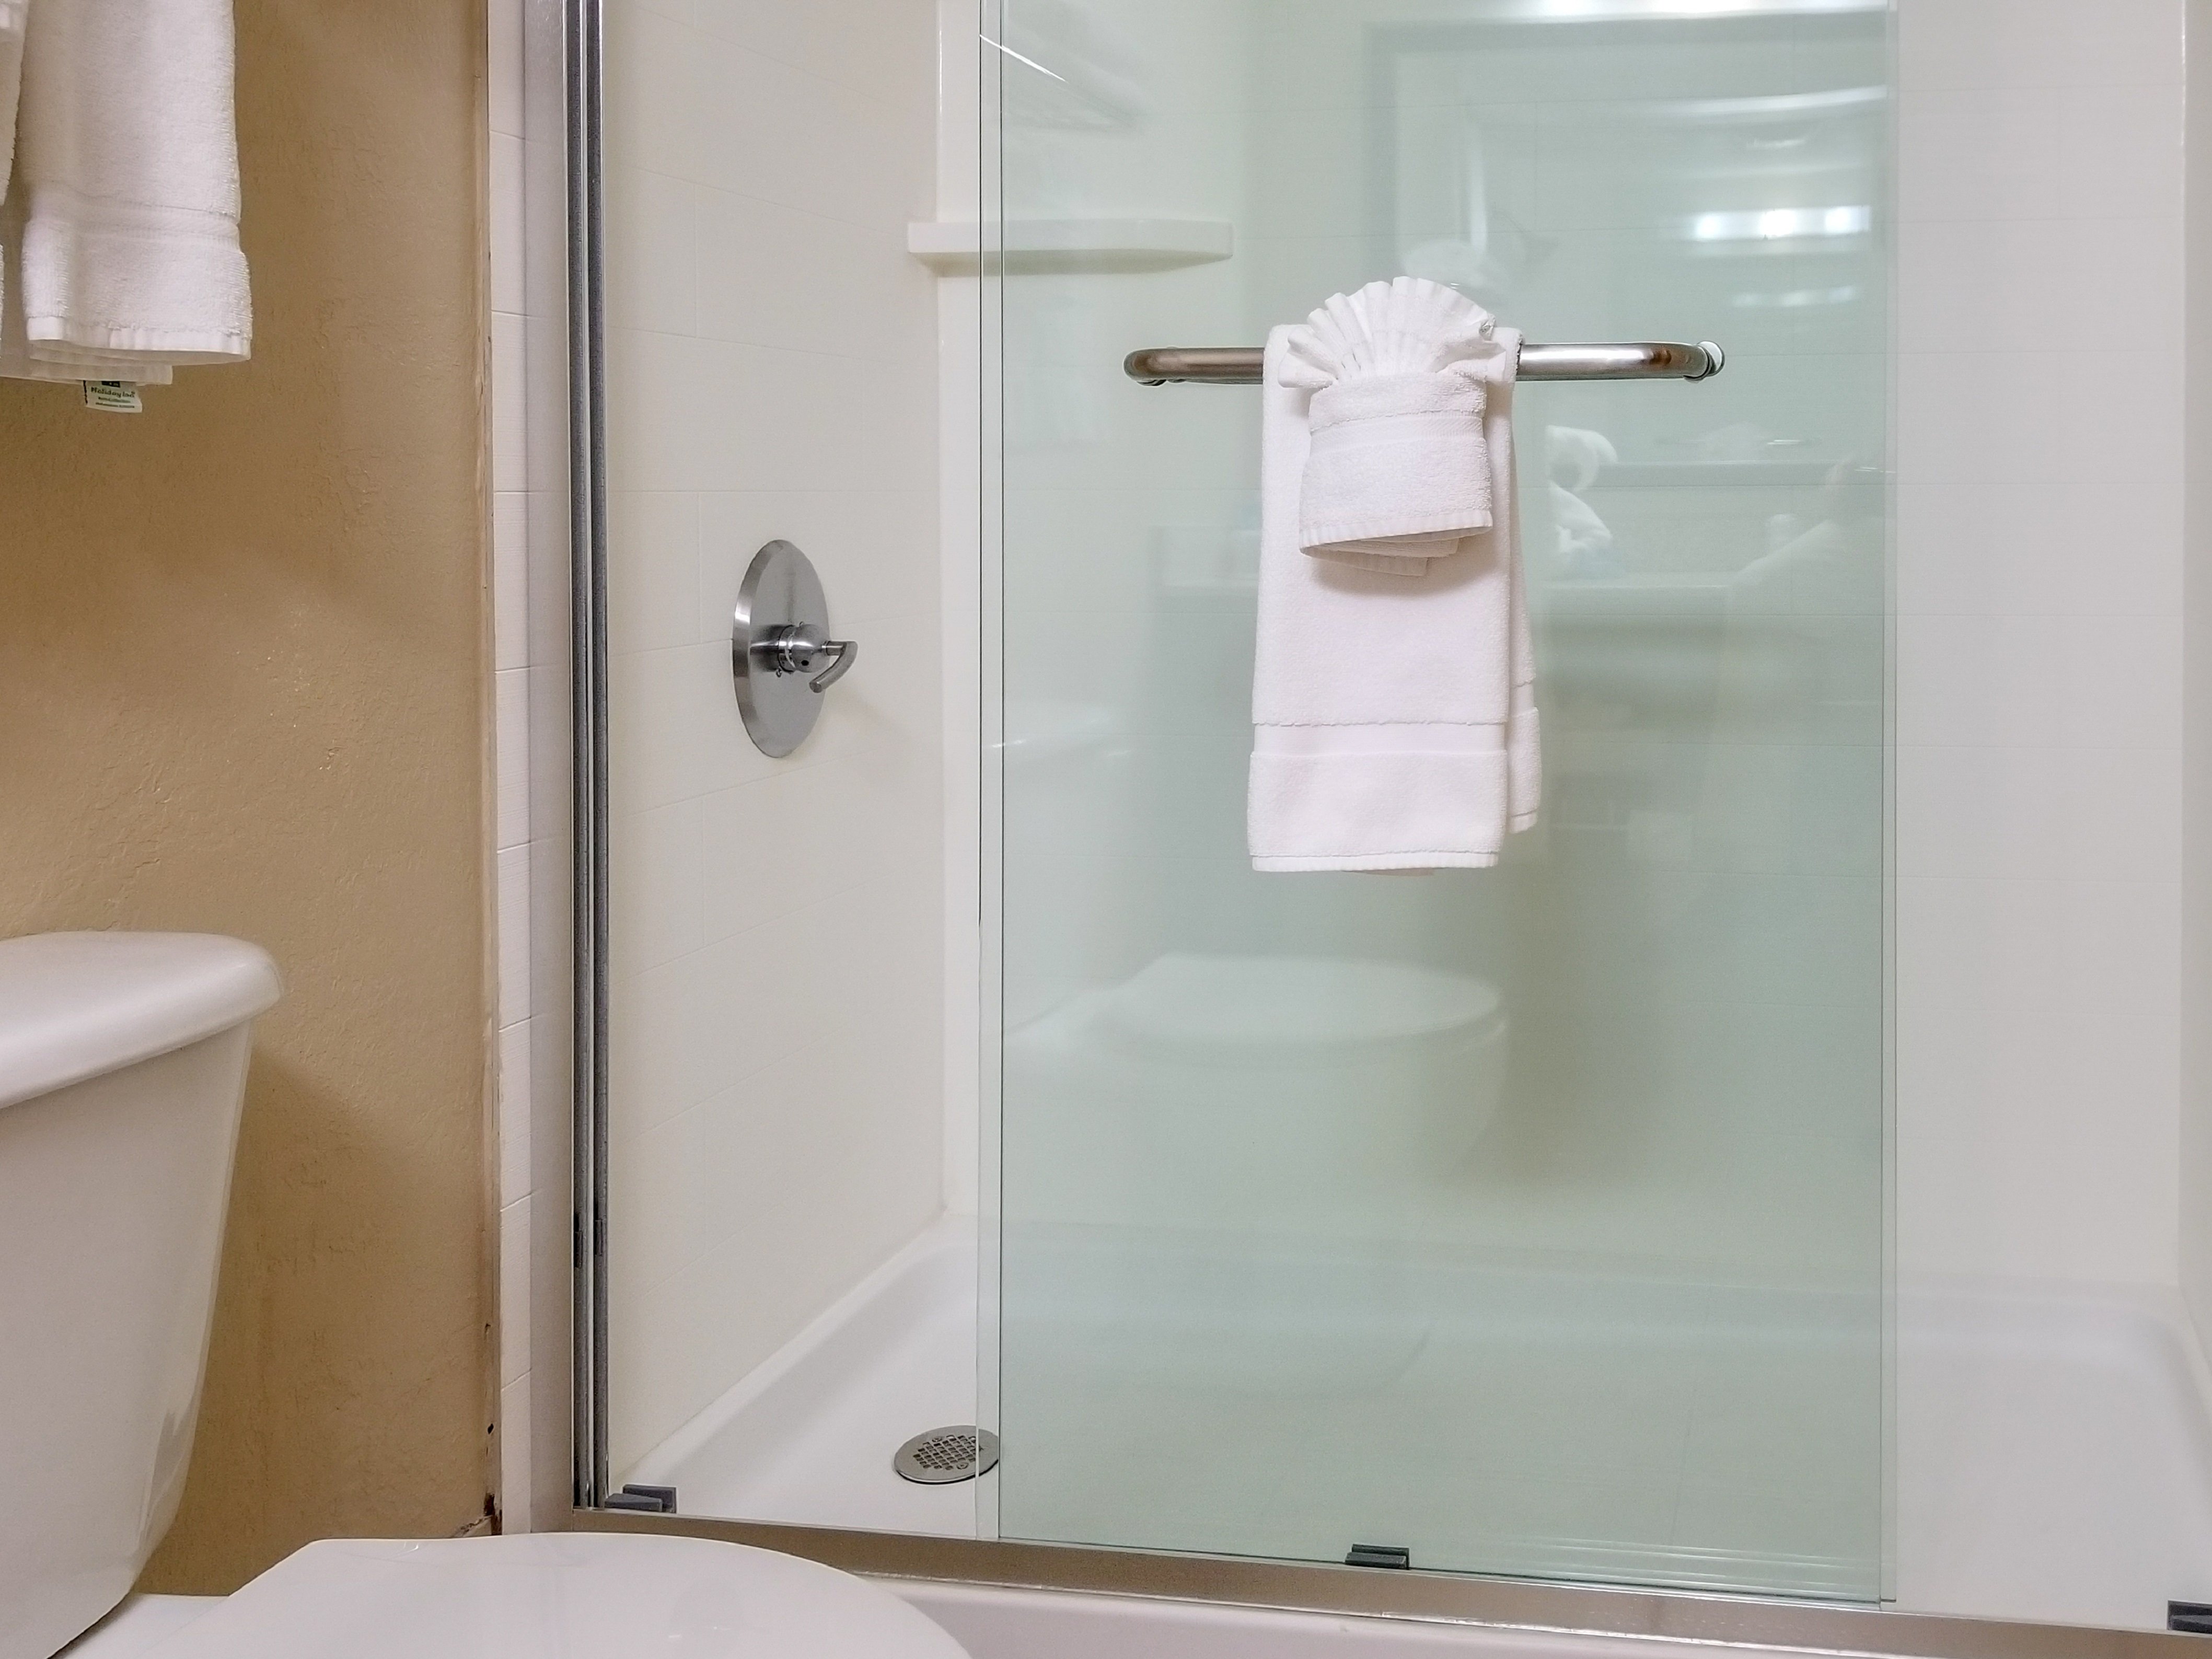 Suite shower walk-in with glass barn-door sliders